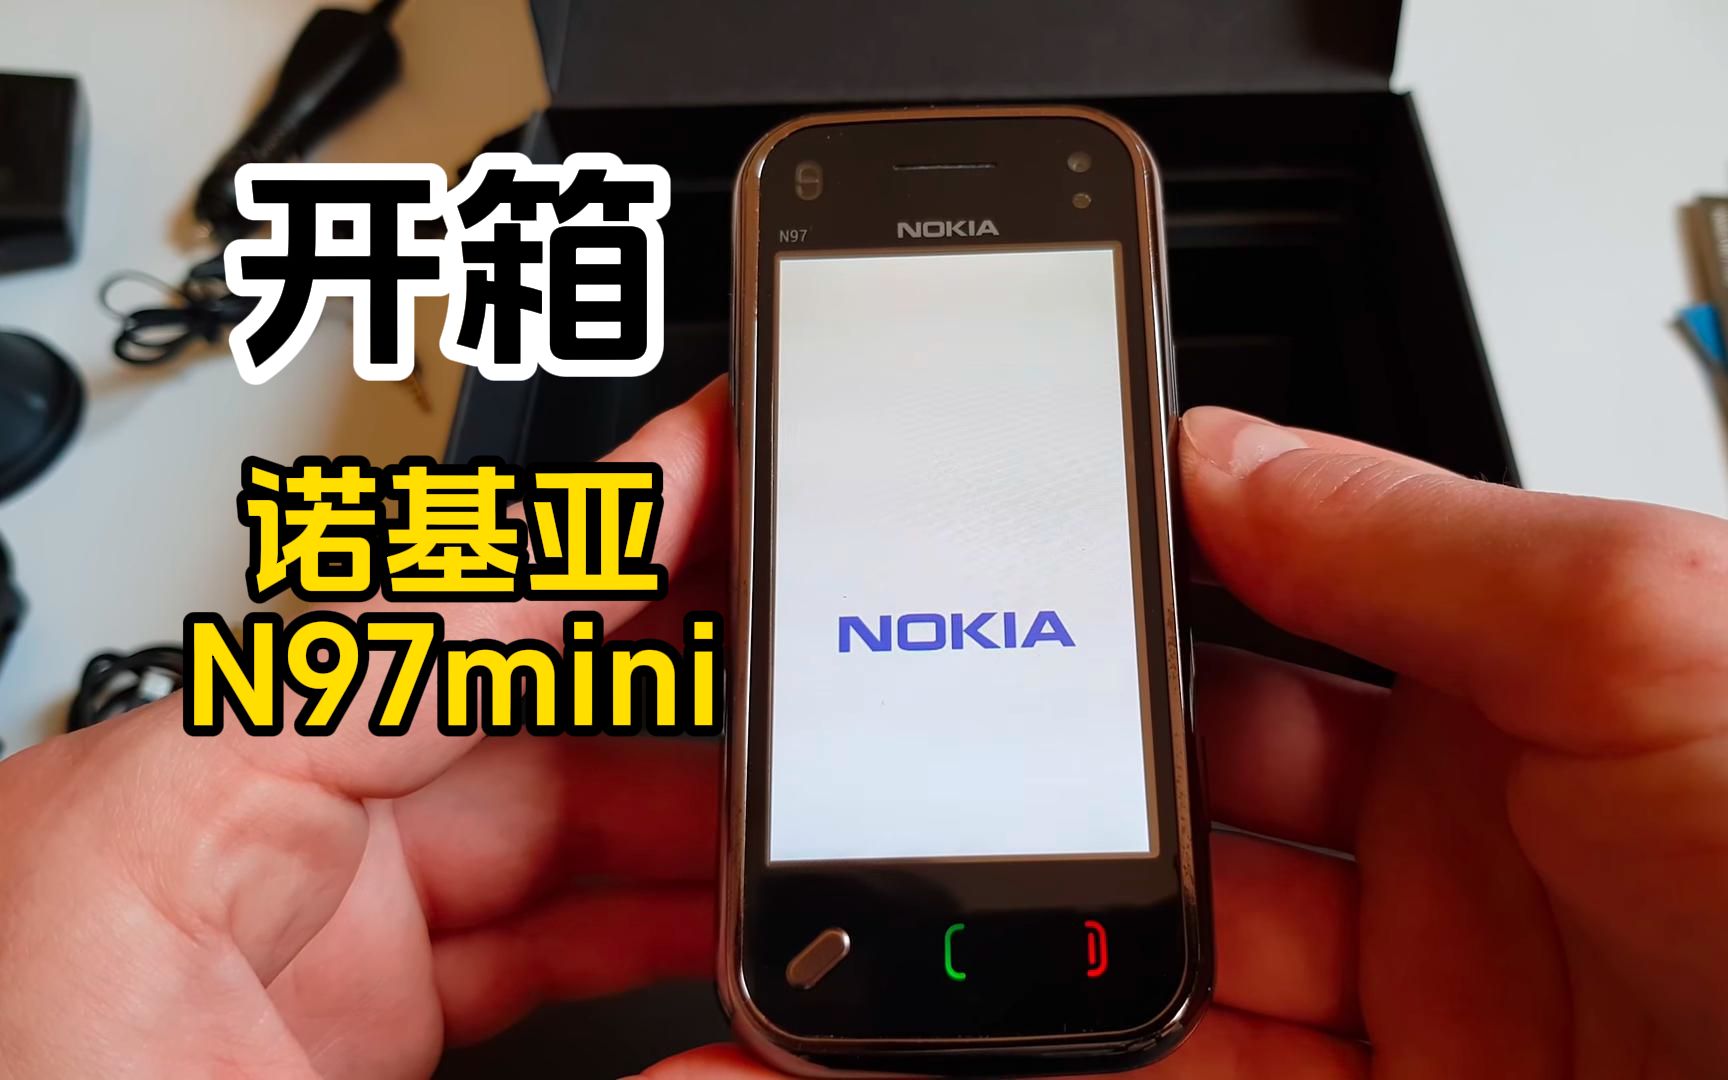 开箱2010年发布的手机诺基亚n97mini,用过的朋友当年肯定不差钱